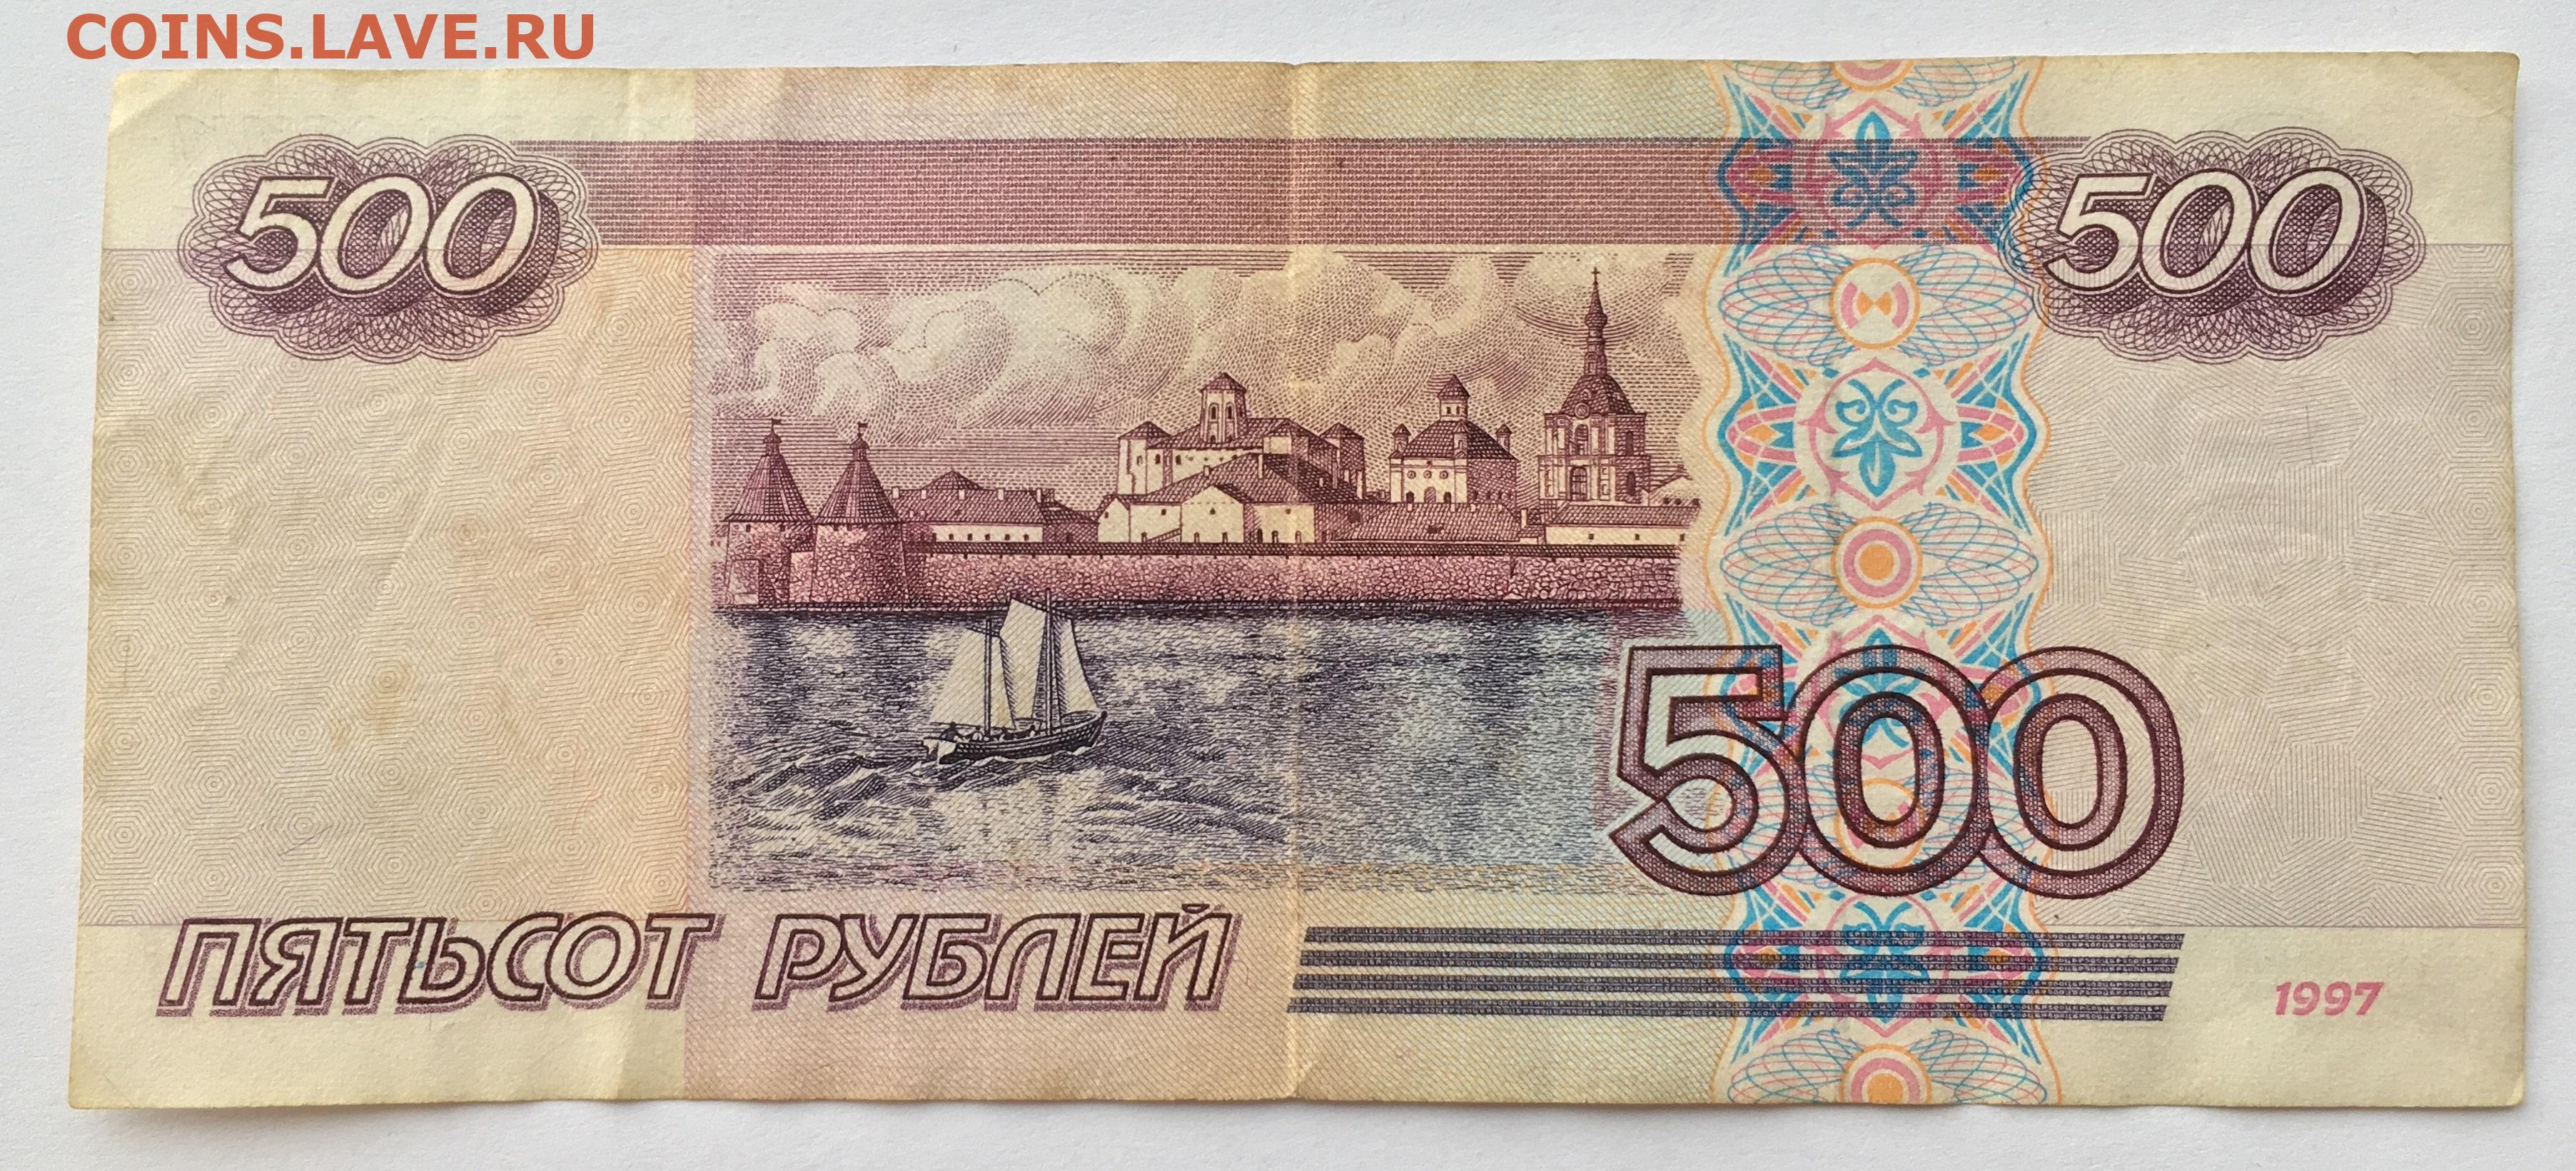 500 рублей 2019. 500 Рублей 1997 (модификация 2004 года). Купюры РФ 500рб. Купюры номиналом 500 рублей 1997 года.